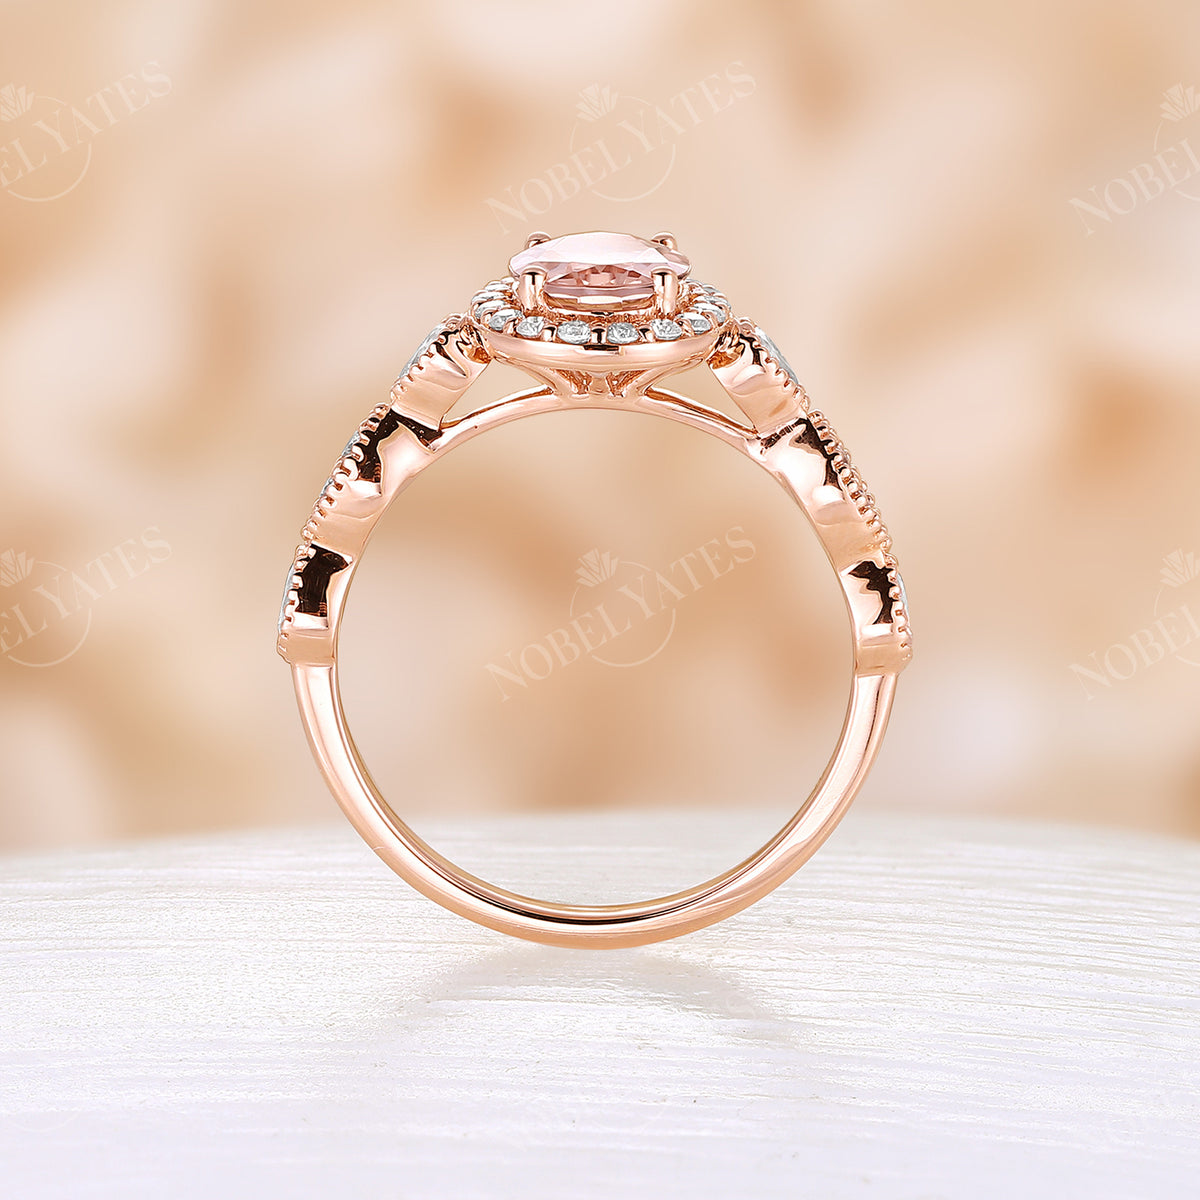 Vintage Orange Pink Morganite Halo & Milgrain Engagement Ring Rose Gold